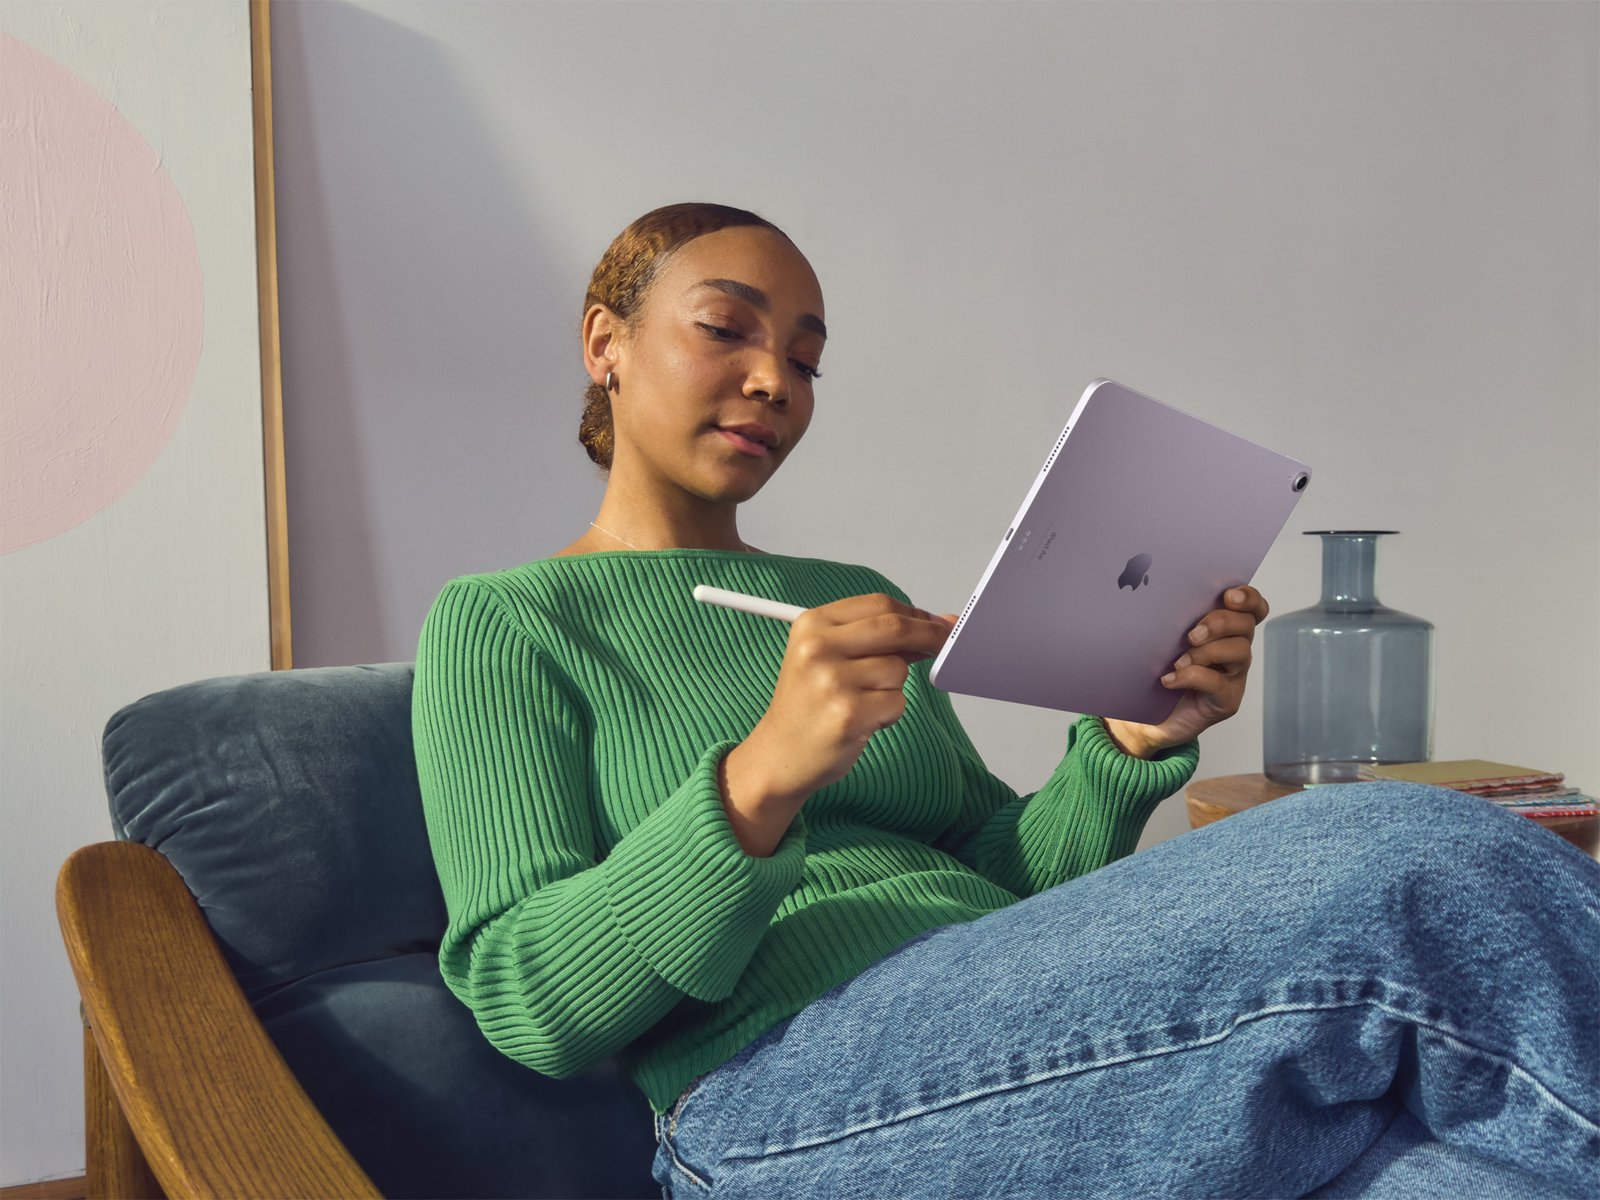 Nos estudos, no trabalho ou naquela videochamada com a família, o iPad Air é seu melhor companheiro. Confira as novidades!